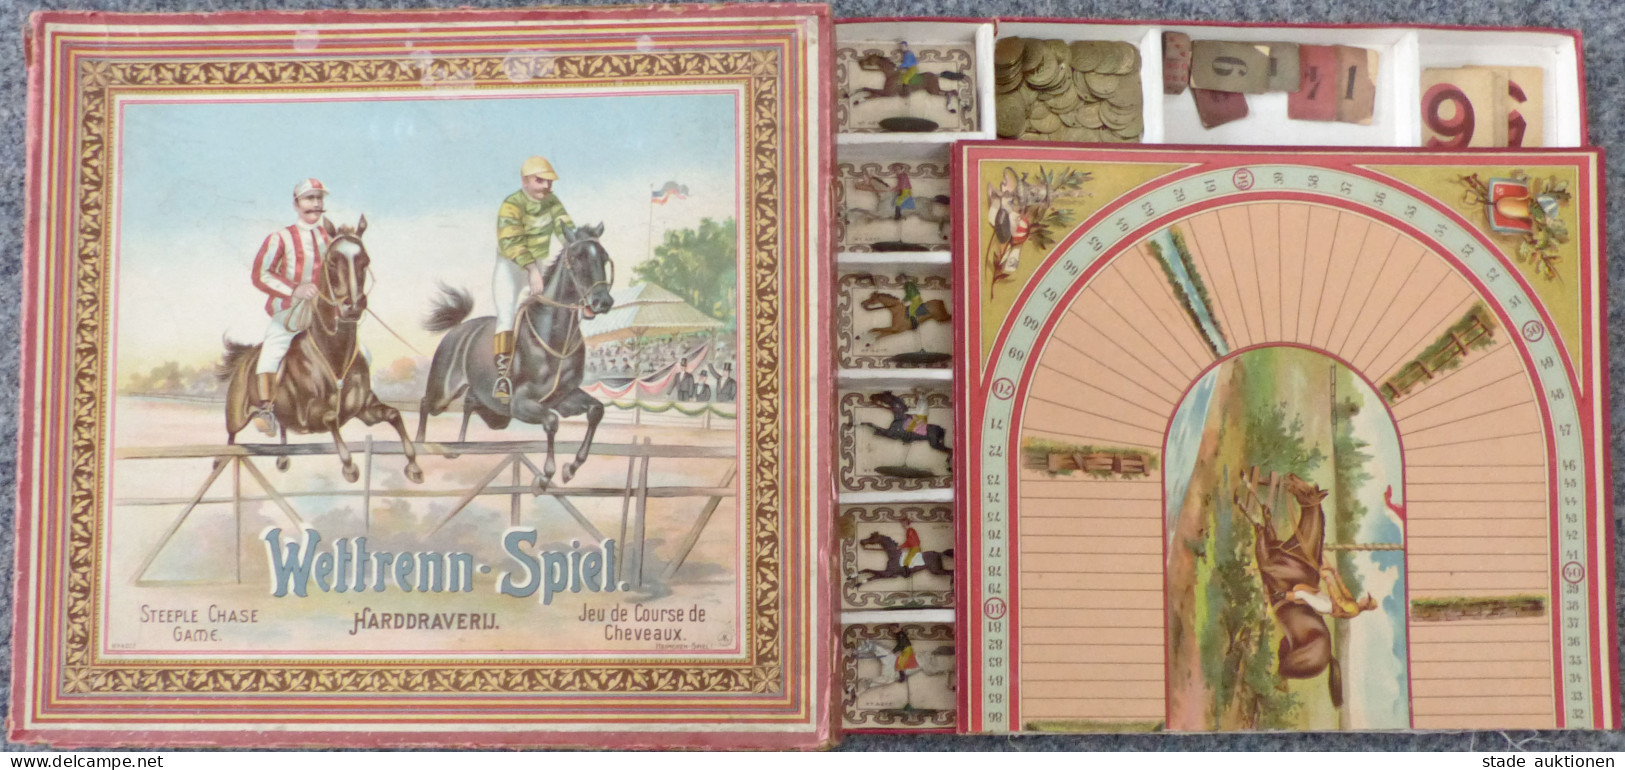 Spielzeug Wettrenn-Spiel Von Heimchen-Spiel 1902, Mit Original-Schachtel Und Anleitung, Alle Pferde Und Spielgeld Vorhan - Jeux Et Jouets